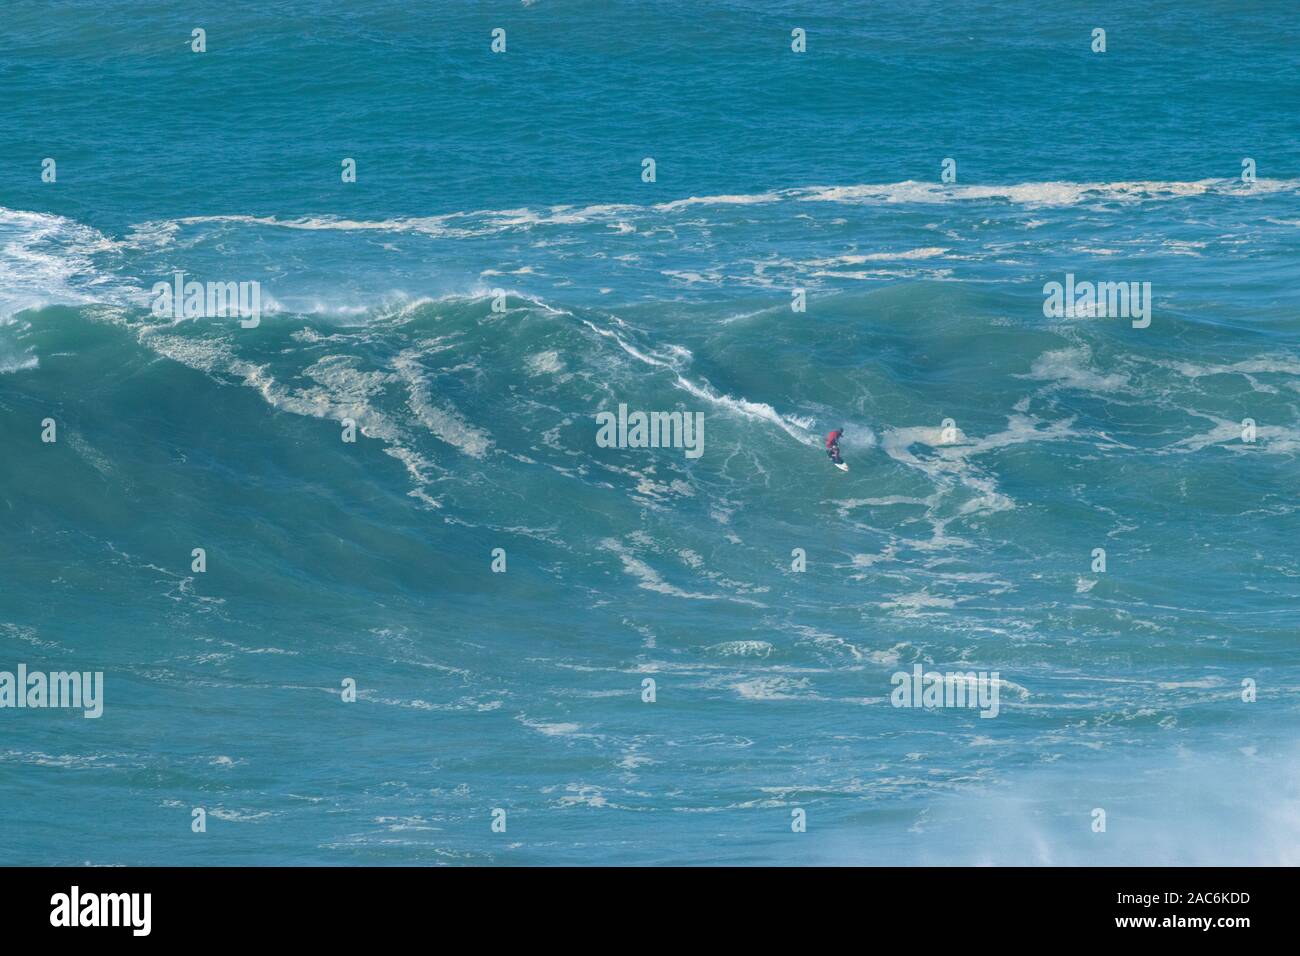 Pro surfer sulla enorme XXL 20-30 metri (70-100 piedi) onde Praia do Norte Nazare Portogallo Foto Stock